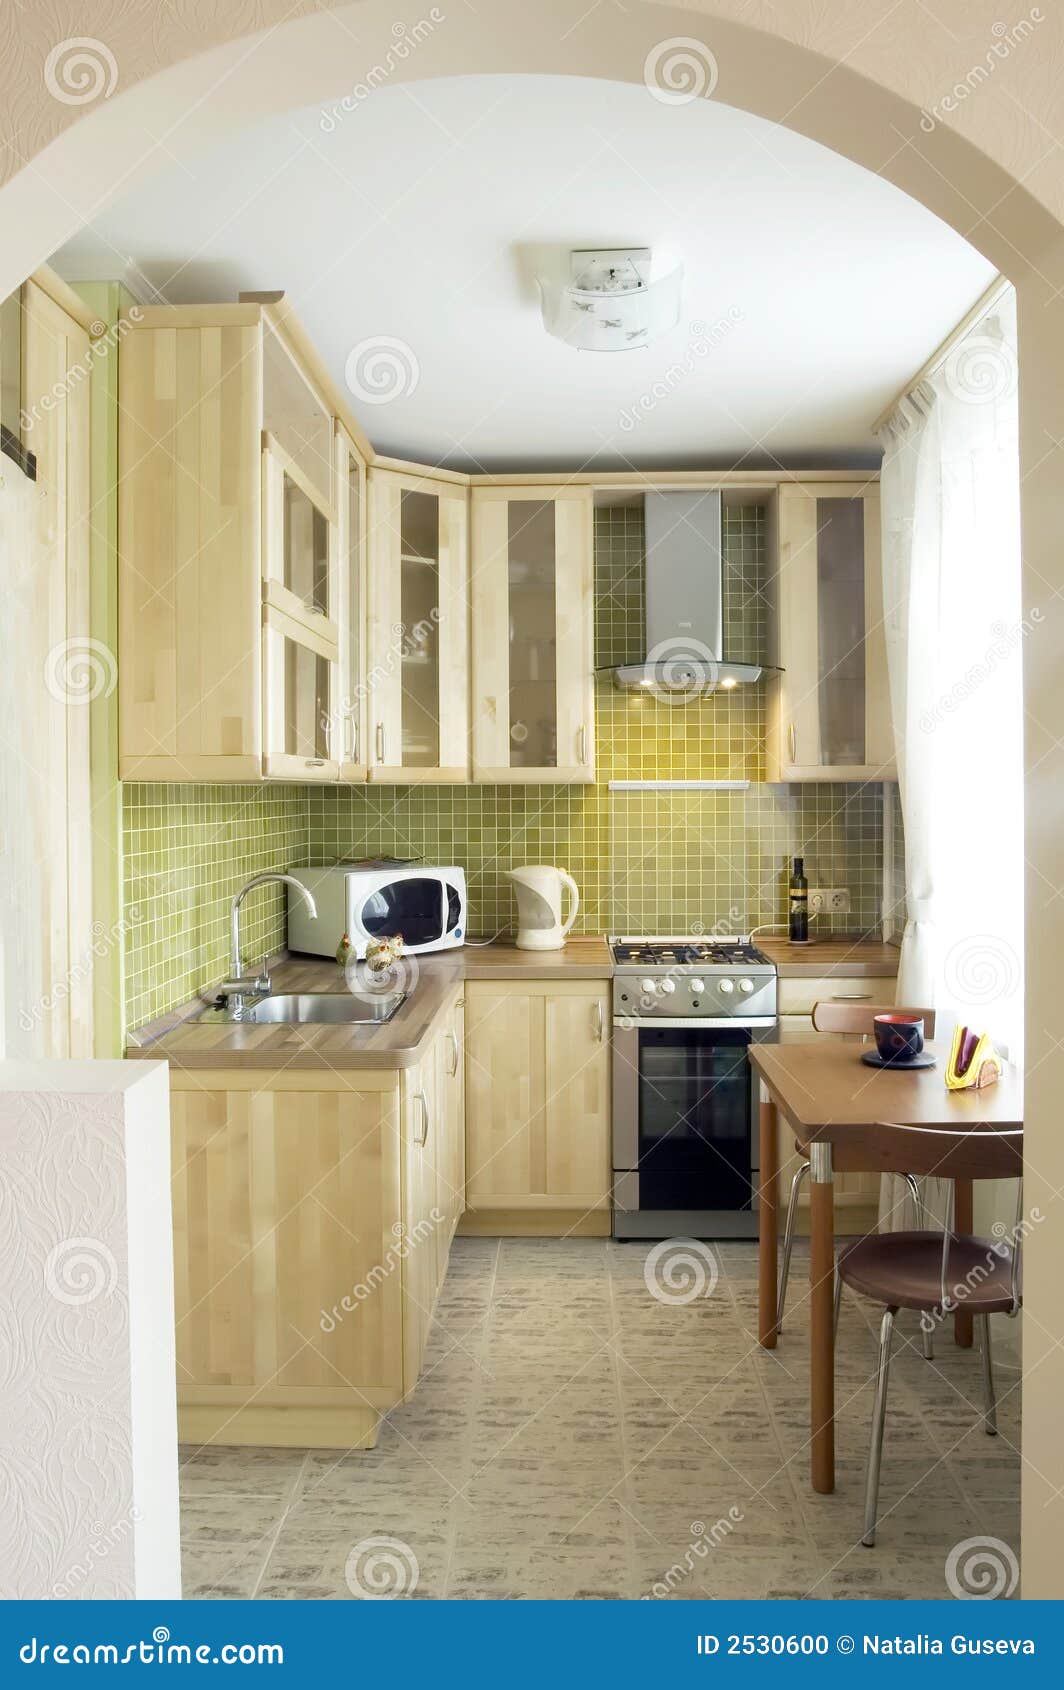 20,20 Small Kitchen Design Photos   Free & Royalty Free Stock ...